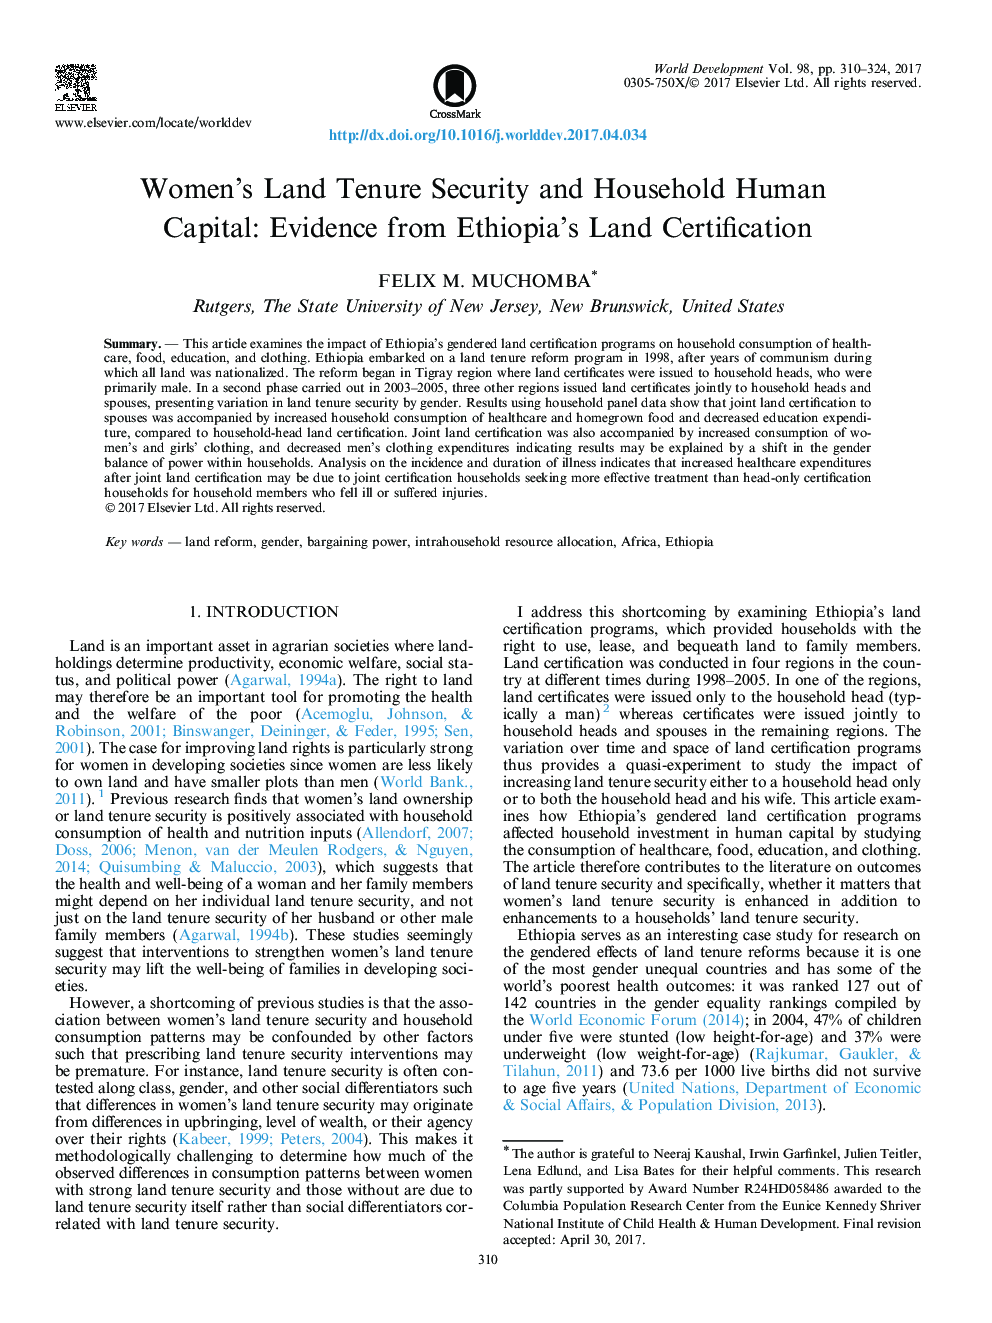 امنیت زمین و حقوق زنان و سرمایه انسانی خانگی: مدارکی از صدور گواهینامه زمین اتیوپی 